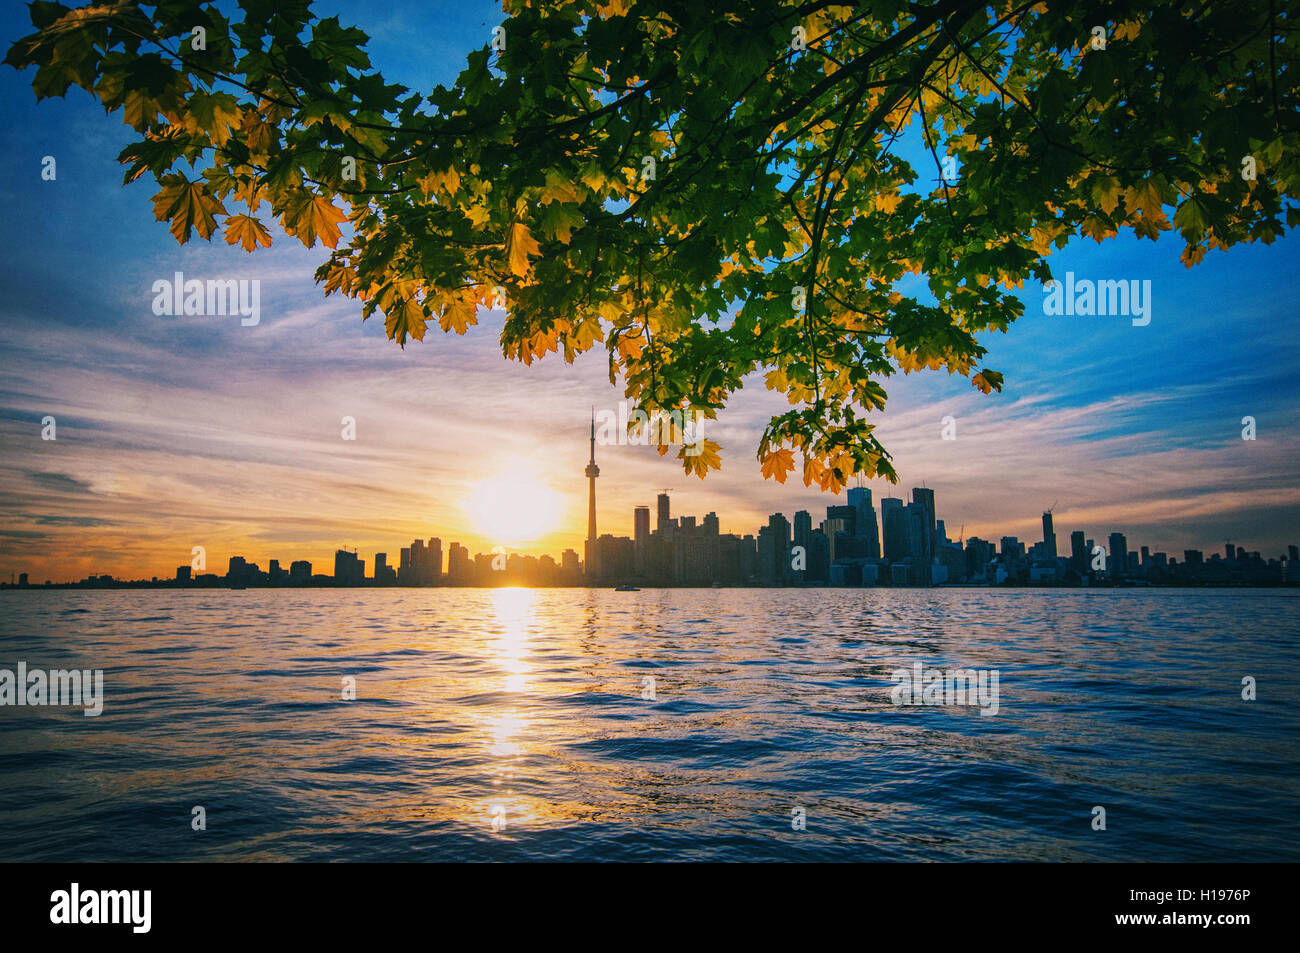 Ville de Toronto au coucher du soleil avec des branches d'arbres d'érable Banque D'Images